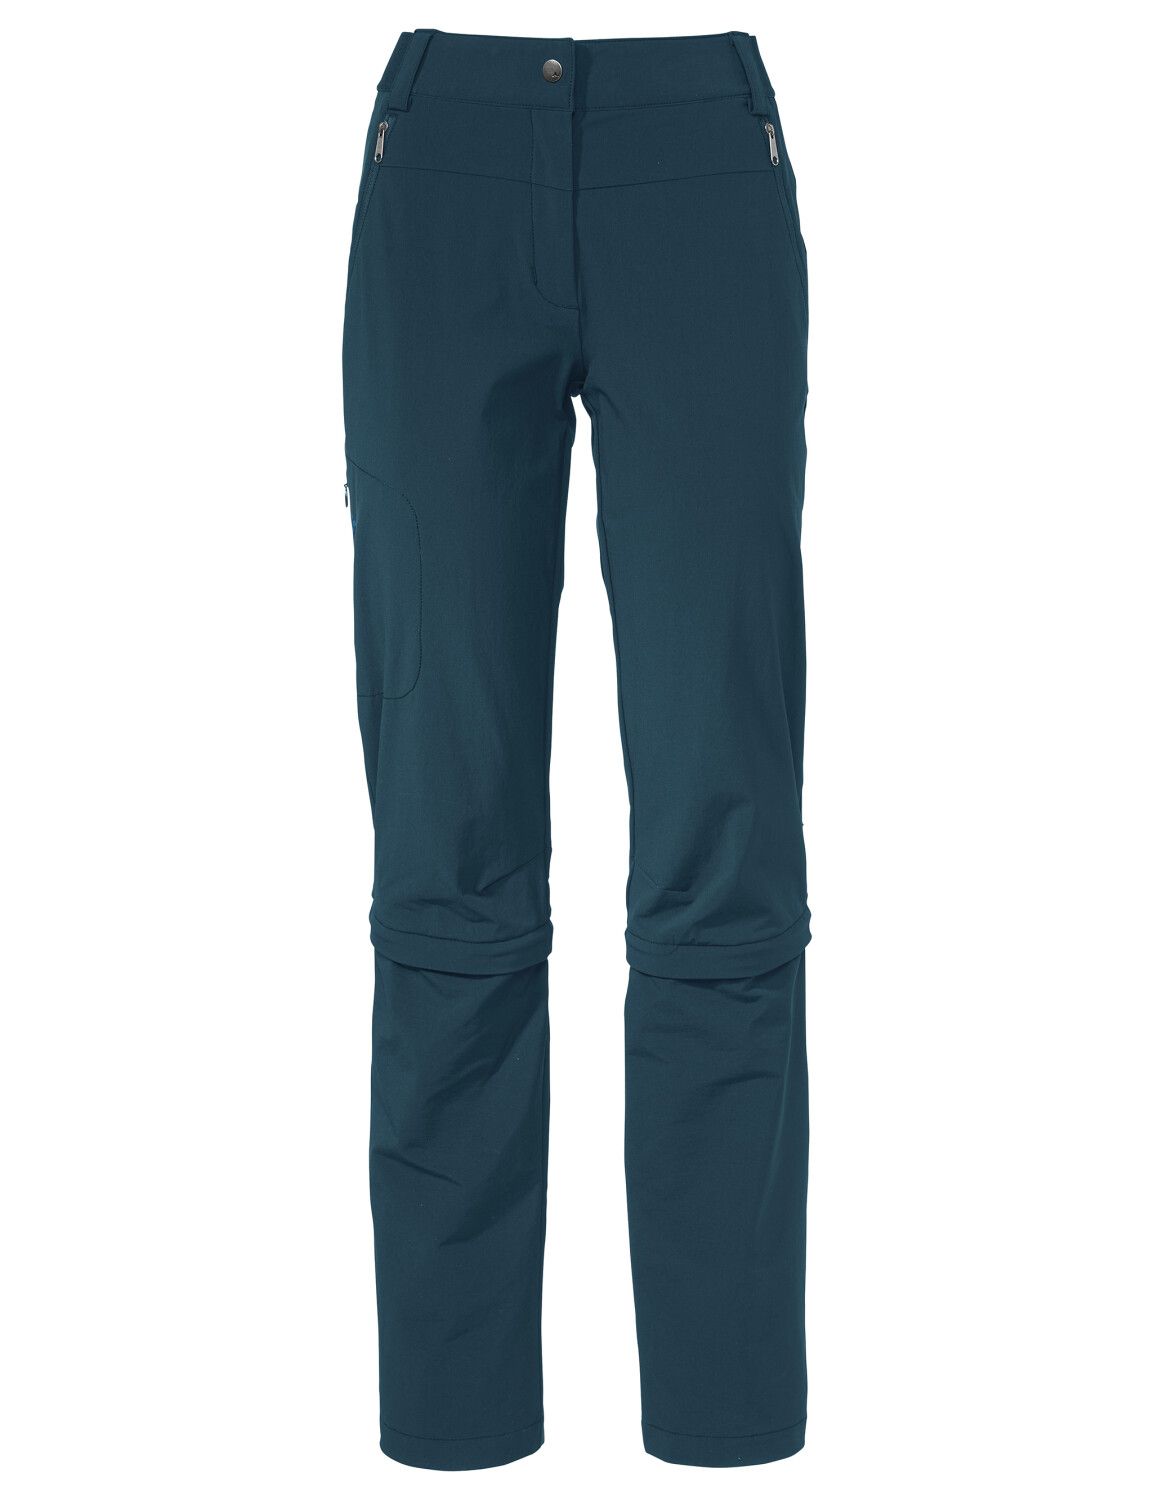 VAUDE Women's Farley Stretch Capri T-Zip Pants III (Bild 47)